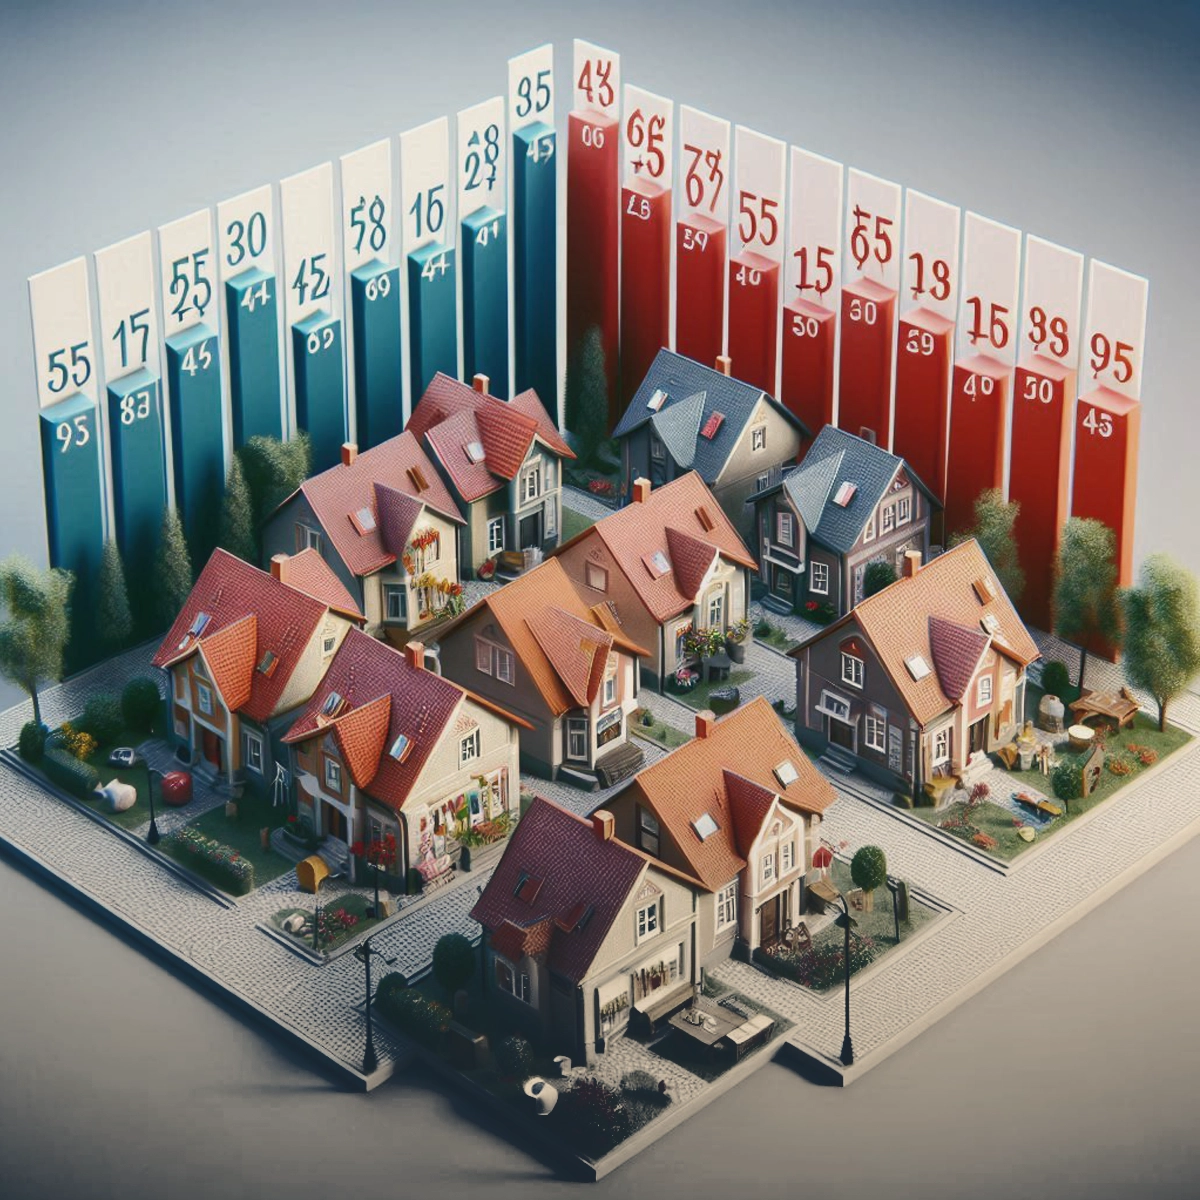 تفاوت قیمت خانه در لهستان بر اساس منطقه شهری